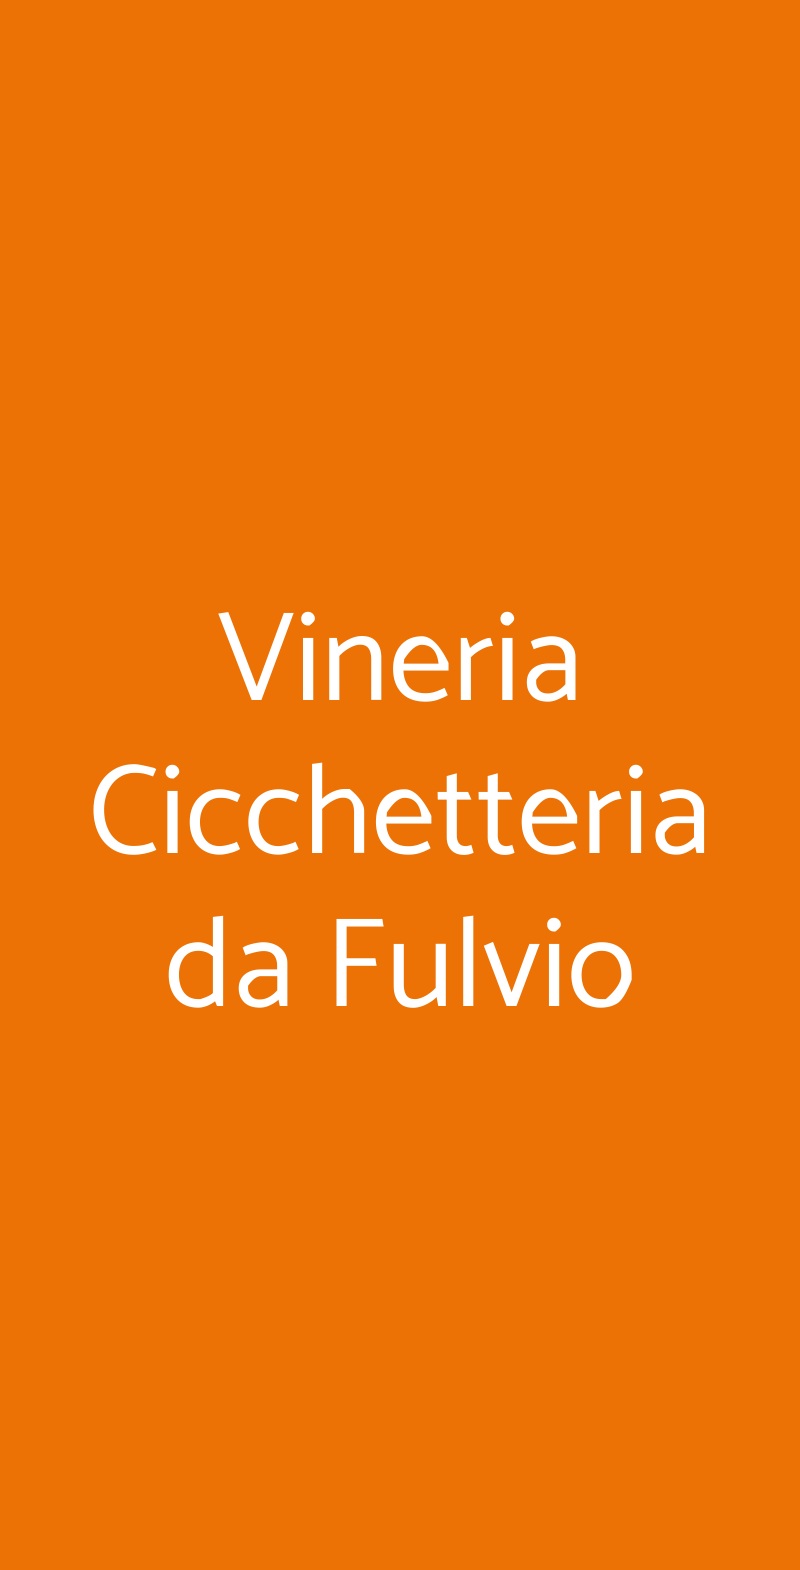 Vineria Cicchetteria da Fulvio Venezia menù 1 pagina